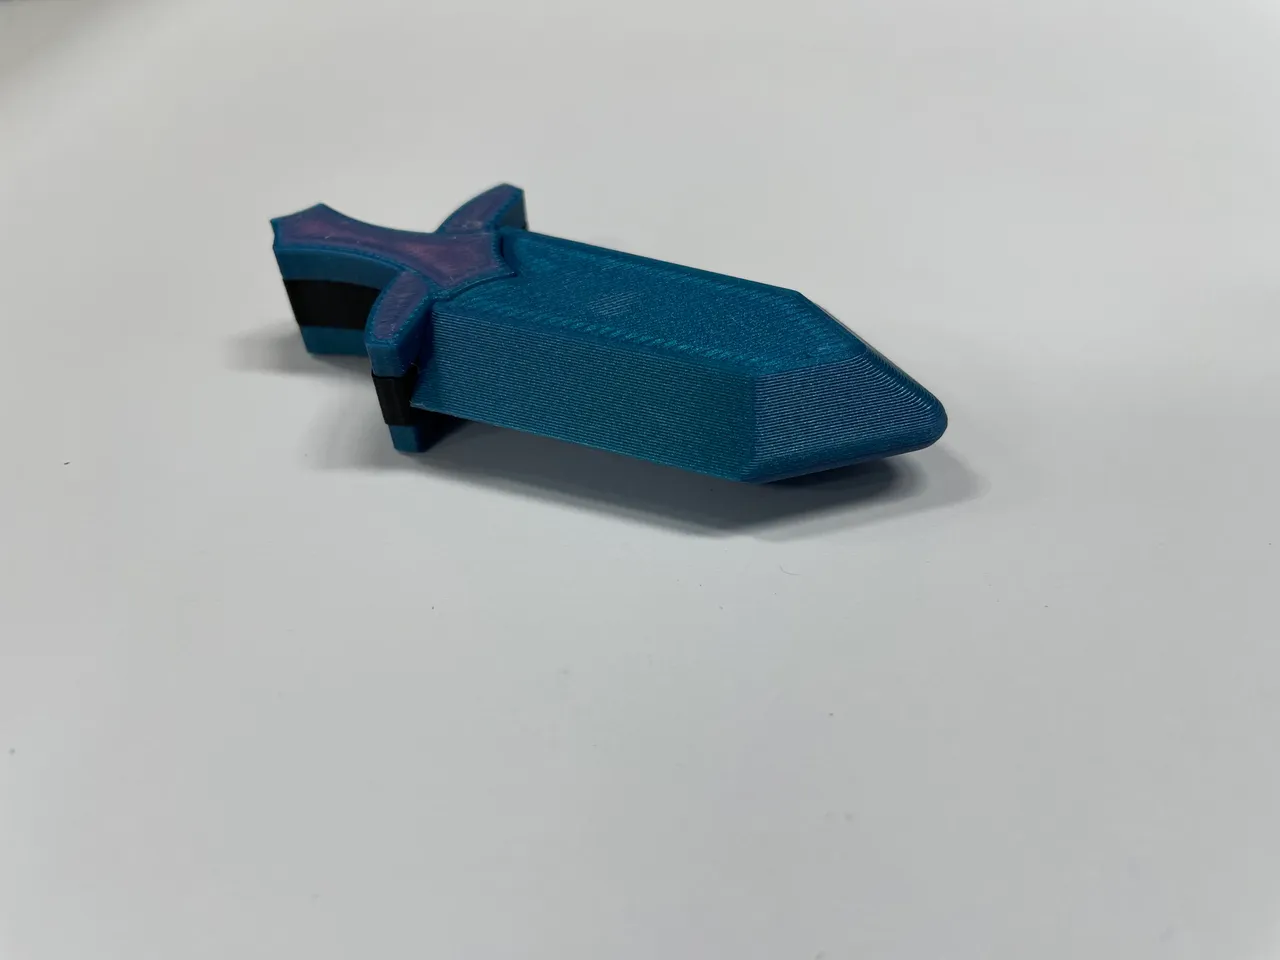 Unique 3D Printed Fidget Toy Guns/Magnetic Swords Stress Reliever –  PANSEKtoy